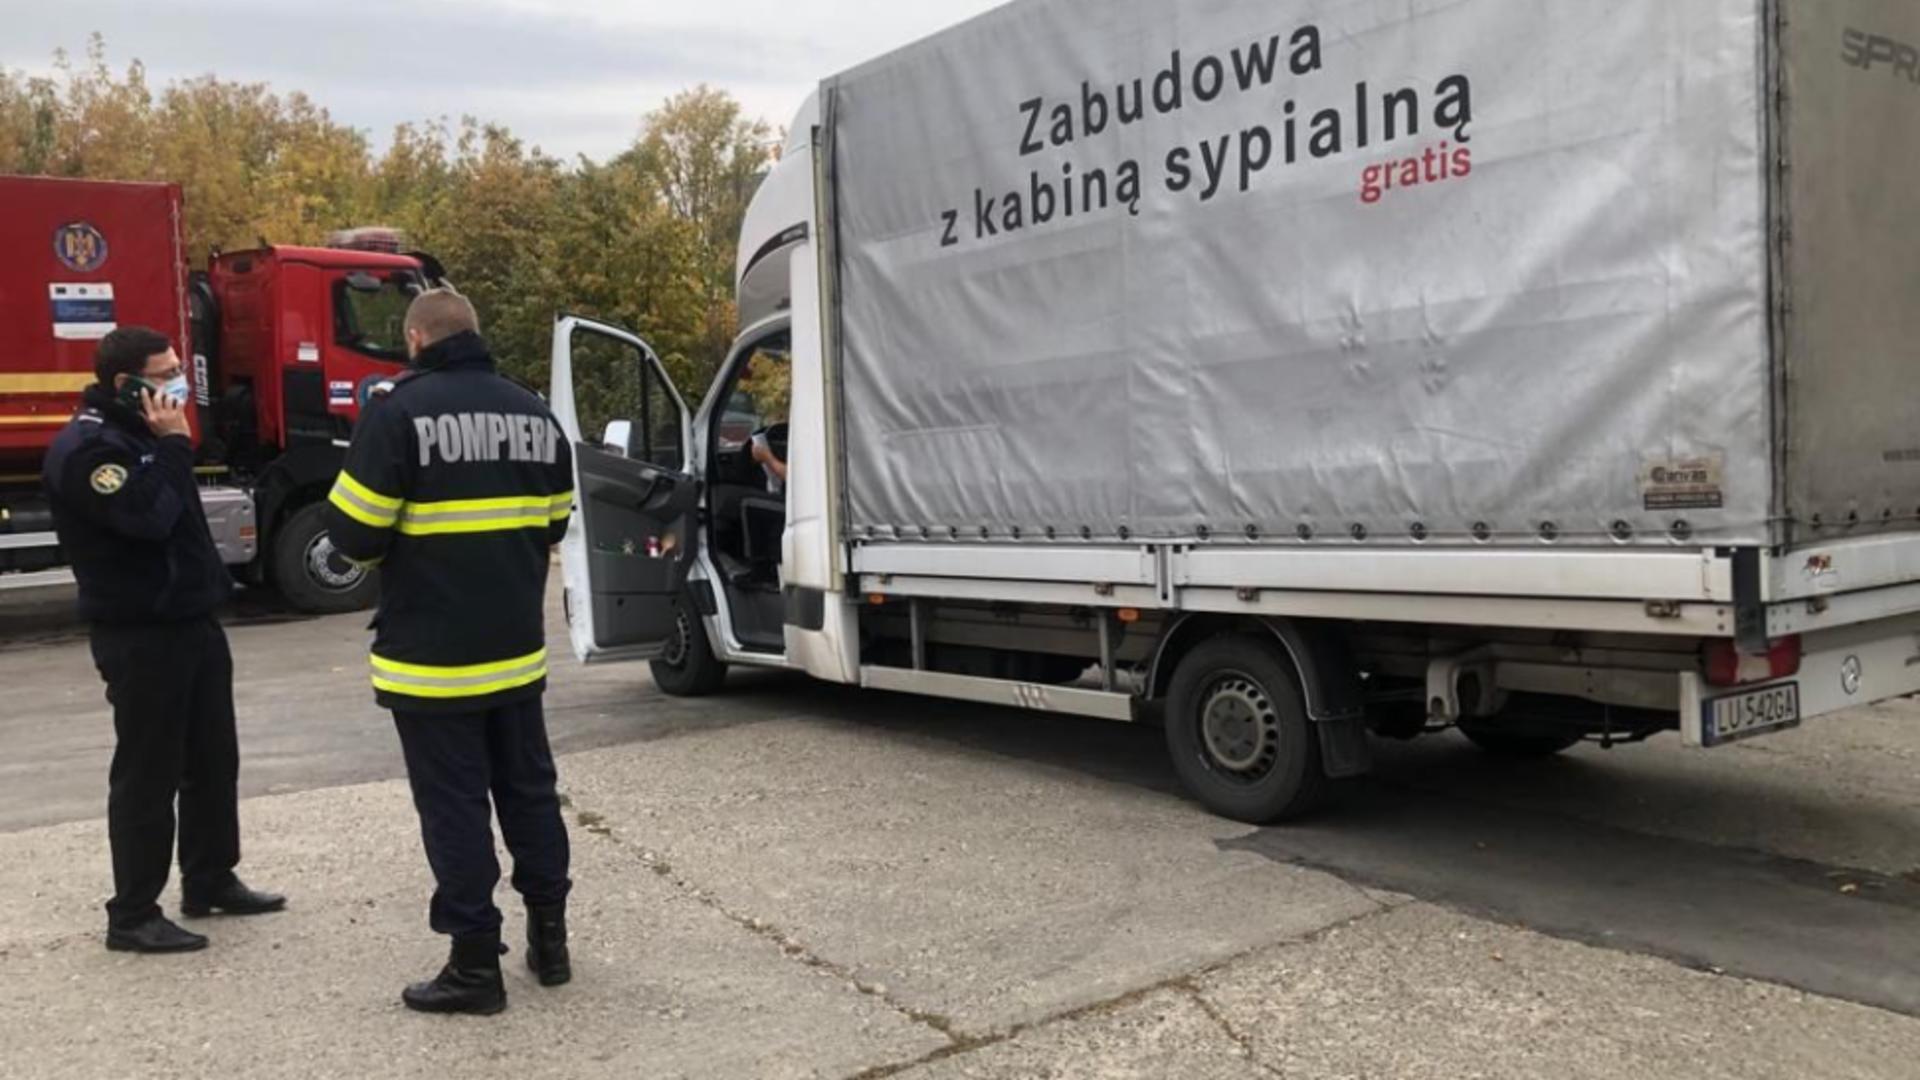 50 de concentratoare de oxigen aflate în stocurile Poloniei, oferite României 